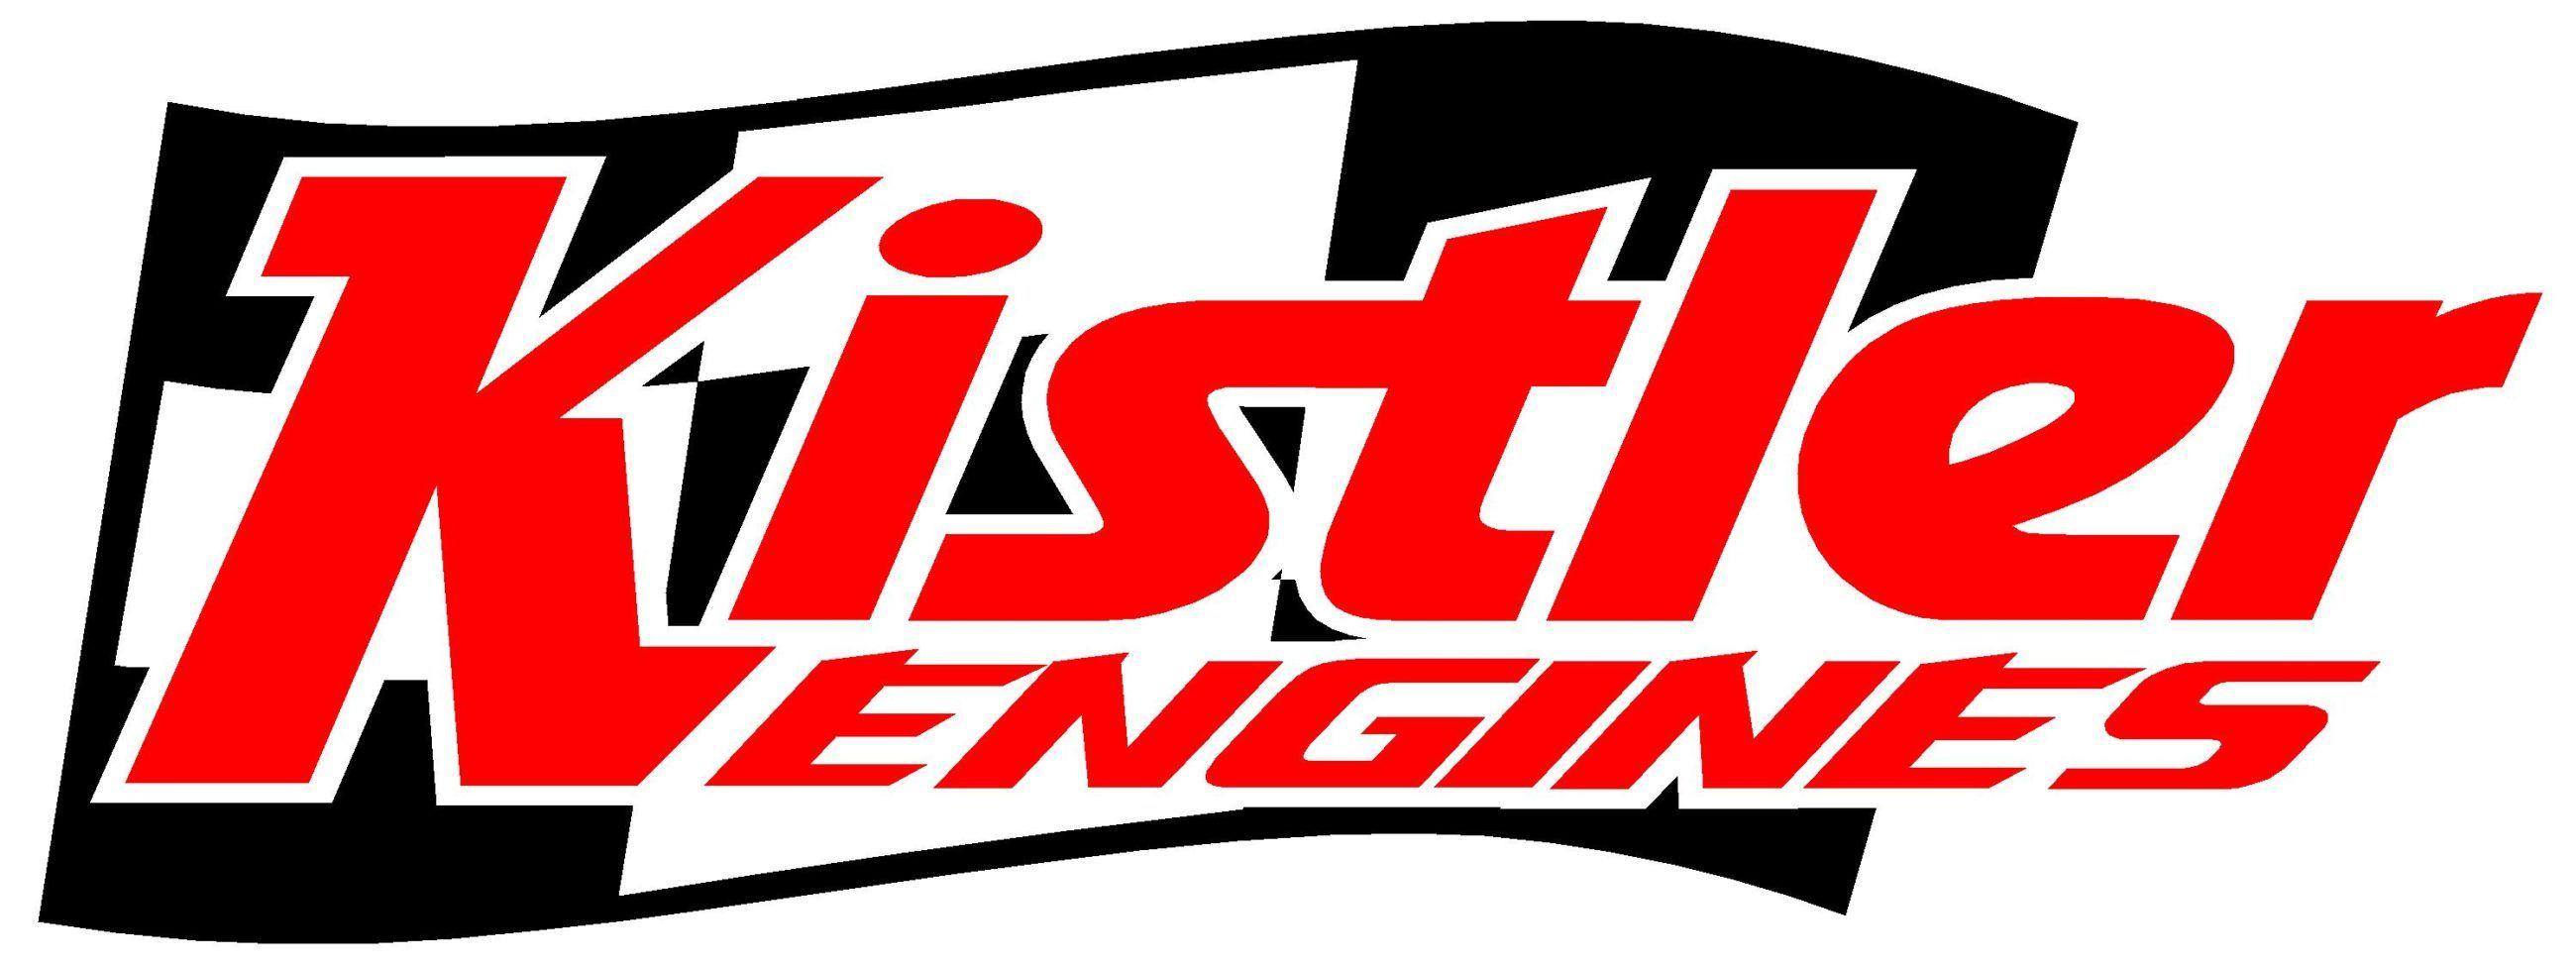 Dirt Track Racing Logo - About Kistler Racing Engines - Dirt Track Racing Engine Builder